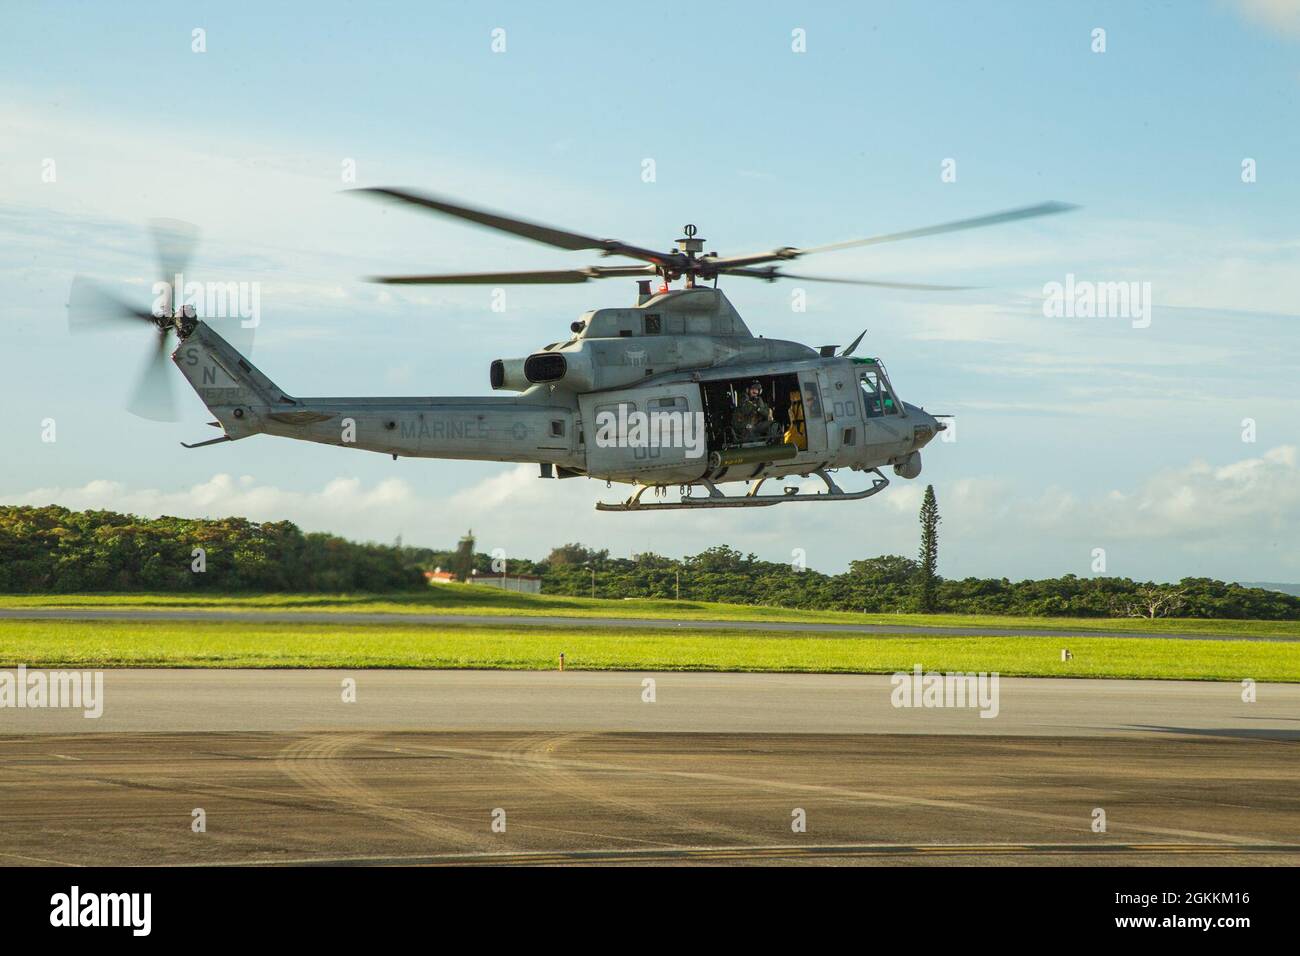 Un elicottero UH-1Y Venom del corpo Marino degli Stati Uniti assegnato a Light Attack Helicopter Squadron (HMLA) 169 si prepara a decollo durante un esercizio di addestramento alla Stazione aerea del corpo Marino Futenma, Okinawa, Giappone, 18 maggio 2021. HMLA-169 ha condotto le operazioni di volo al fine di rimanere preparato ed efficiente per qualsiasi operazione nella regione indo-pacific. Foto Stock